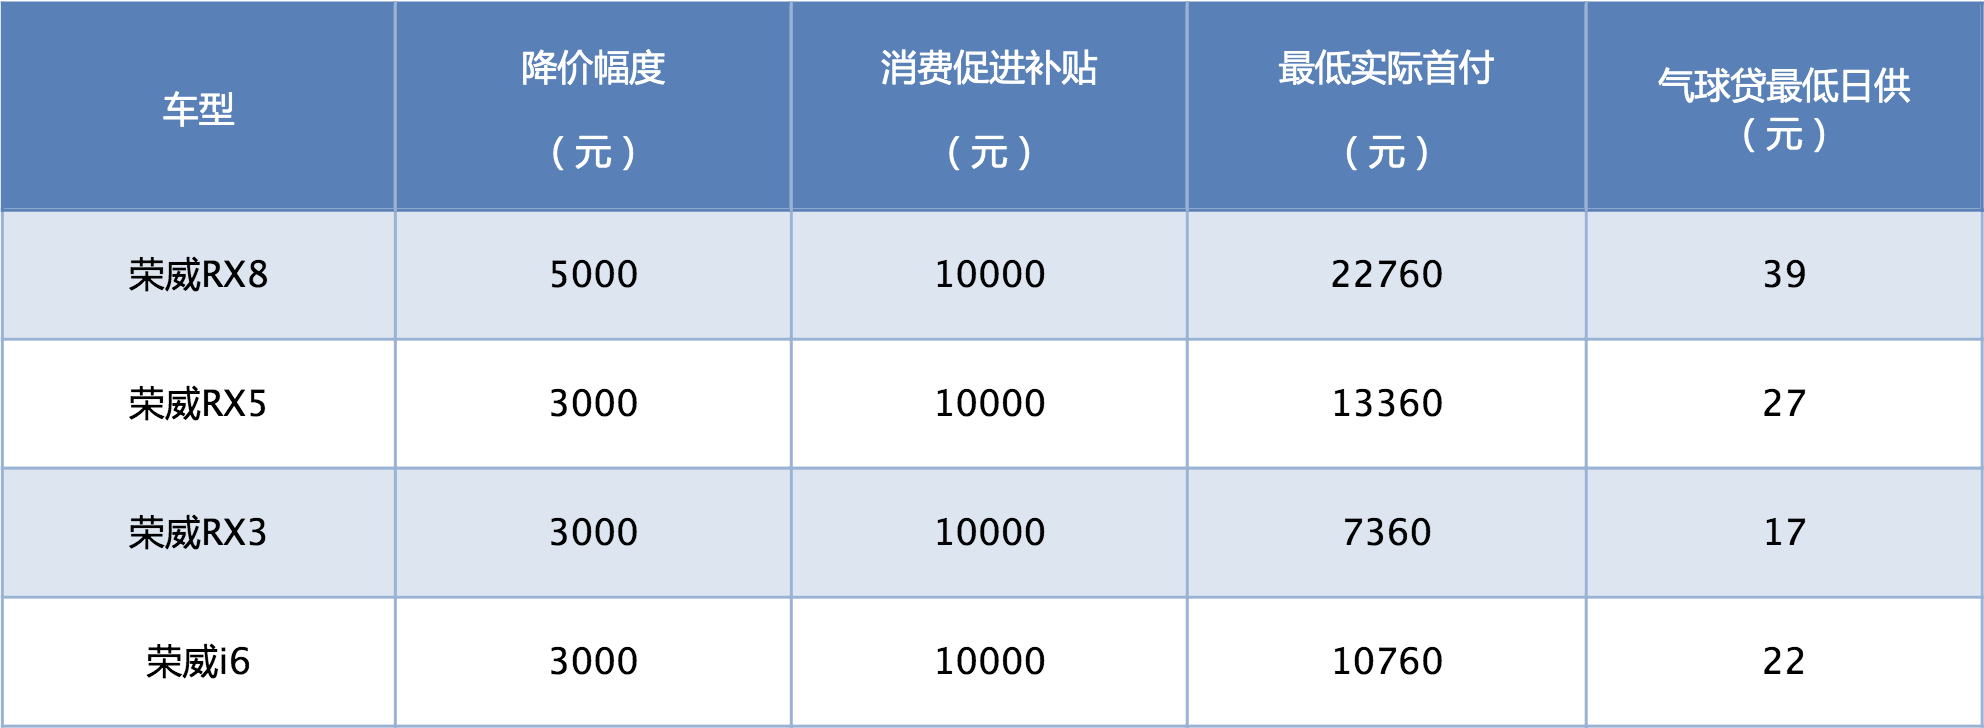 荣威调整部分车型官方指导价 最高降幅达五千元